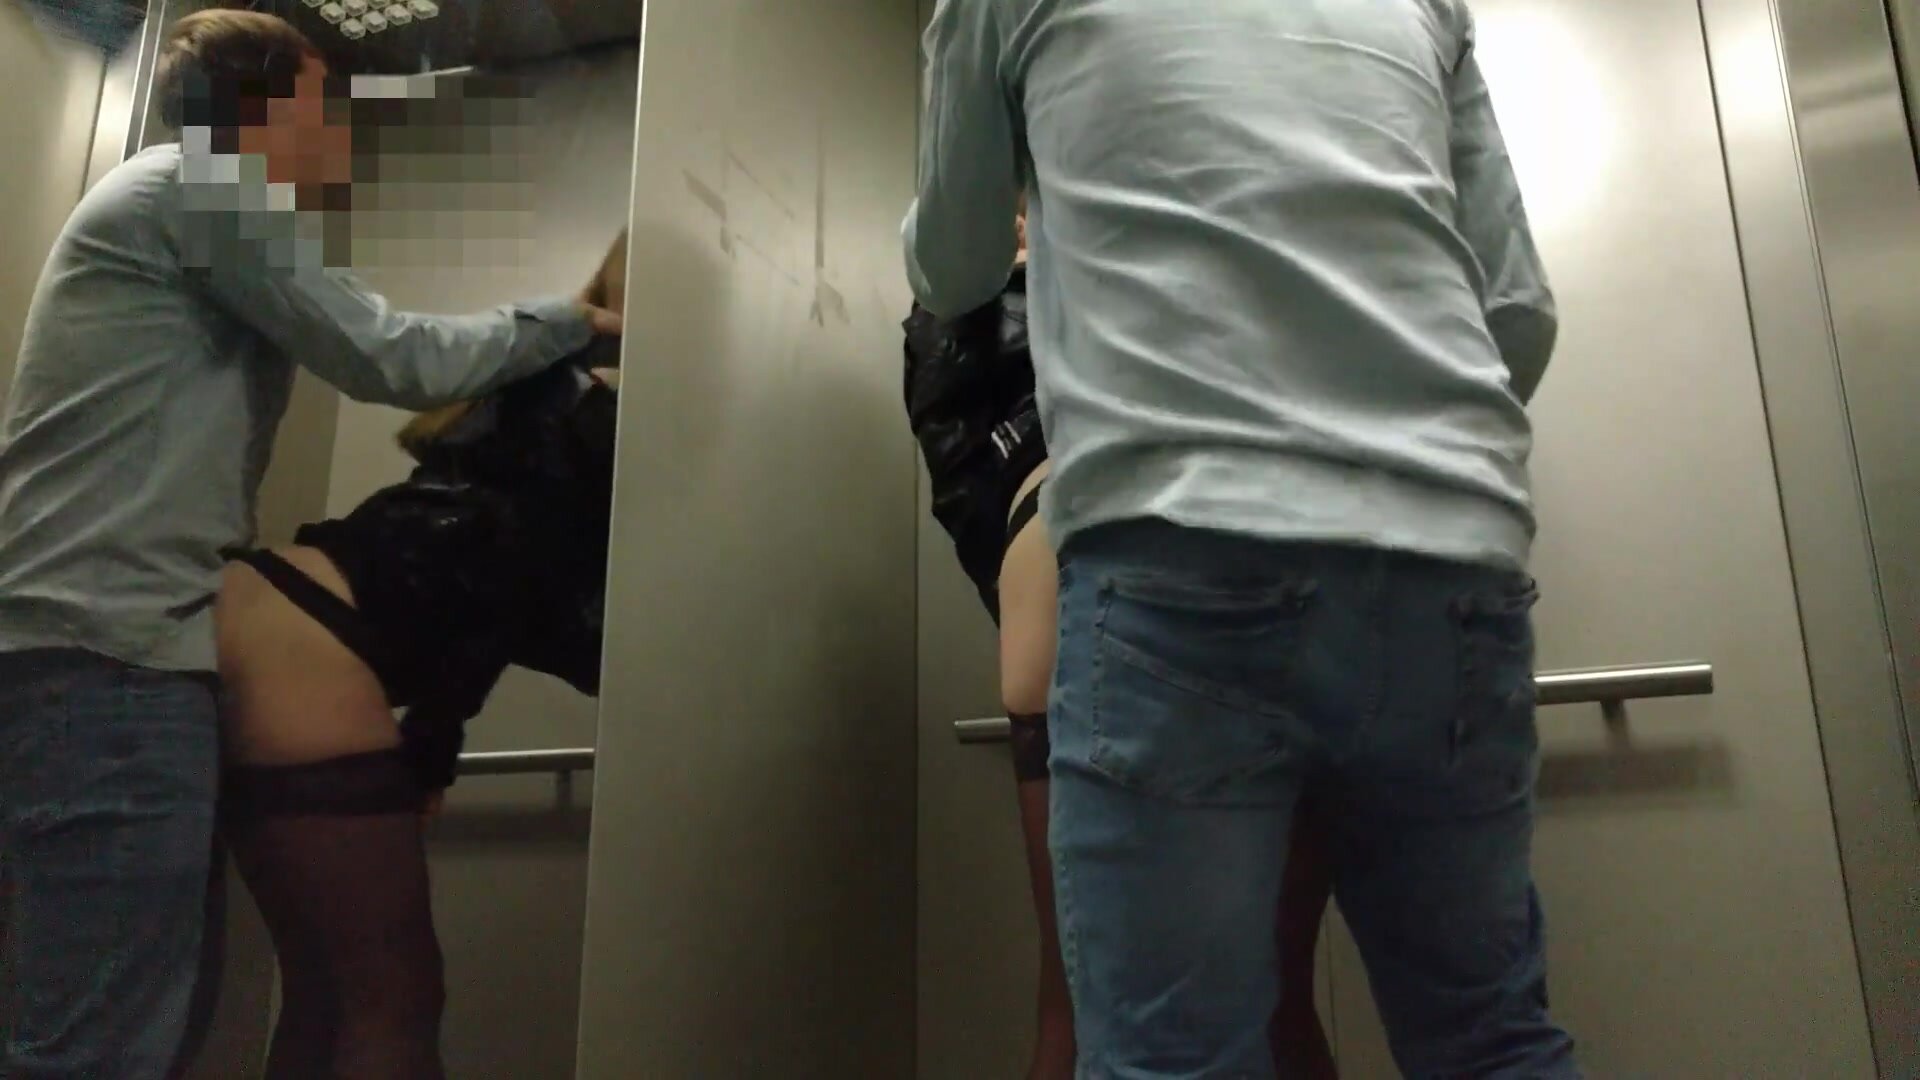 Un couple de voyeurs fait du sexe en public à risque dans un ascenseur photo